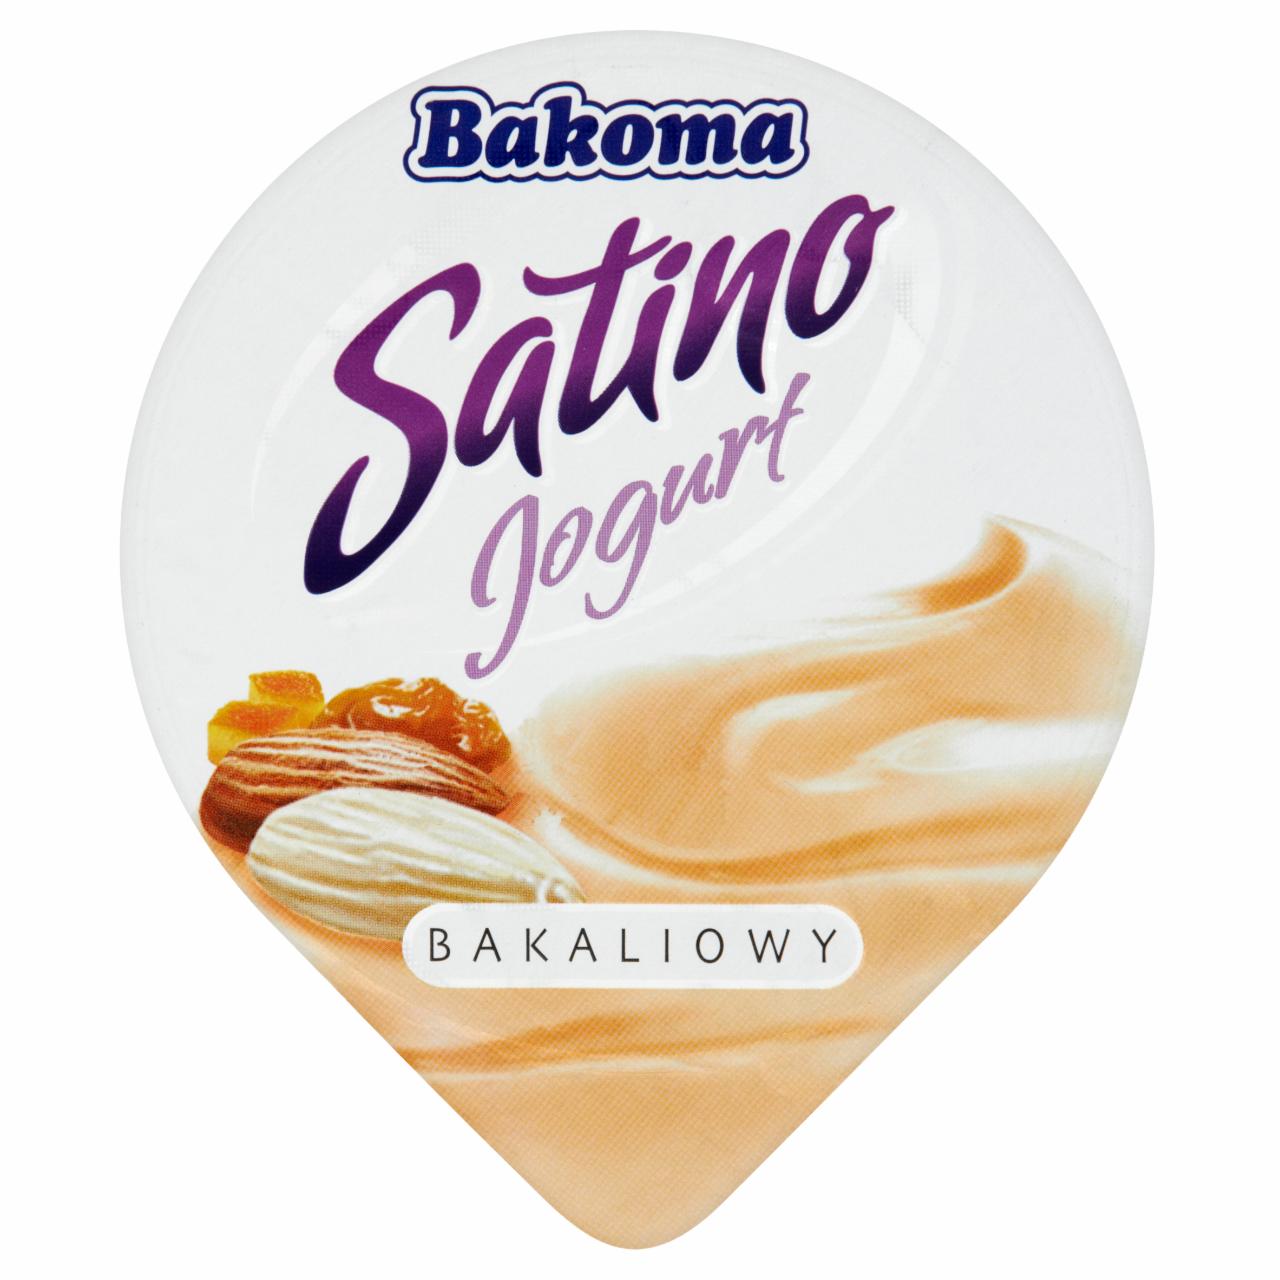 Zdjęcia - Bakoma Satino Jogurt bakaliowy 150 g